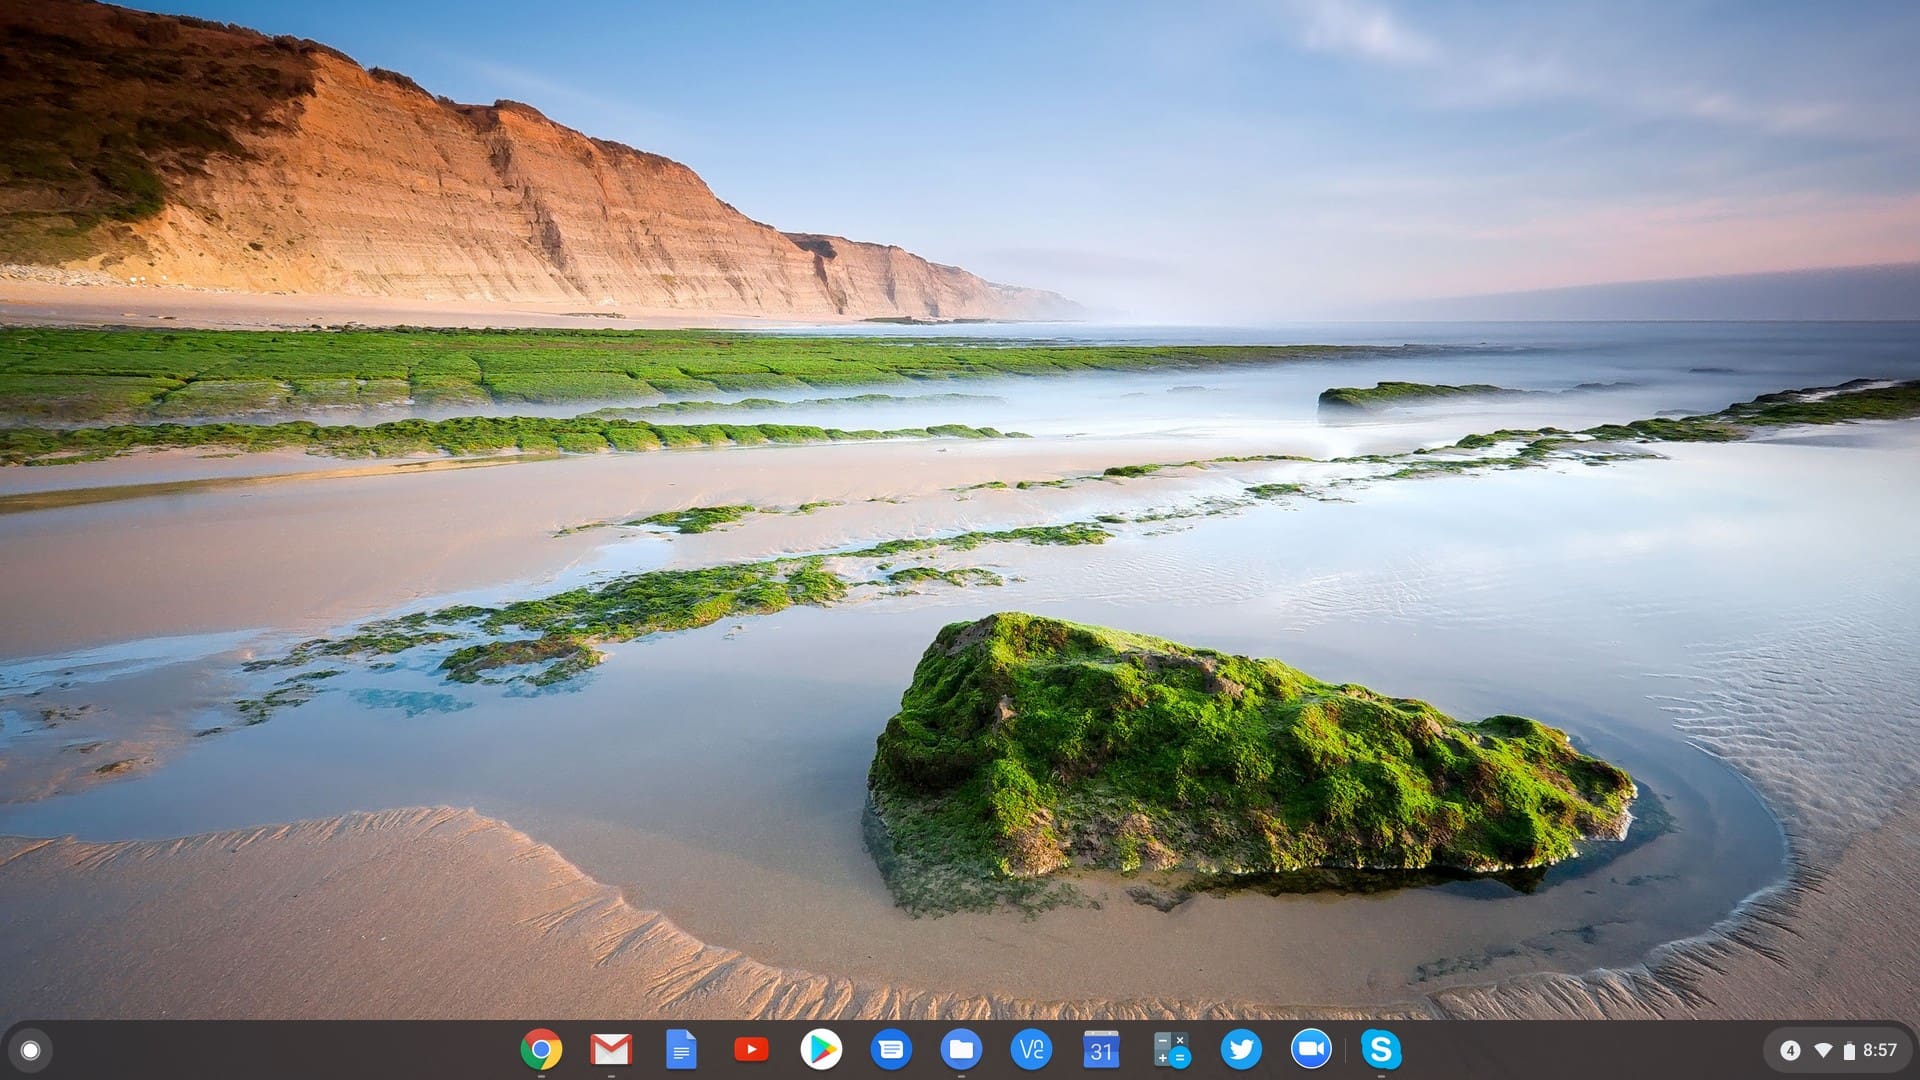 Chrome OS desktop